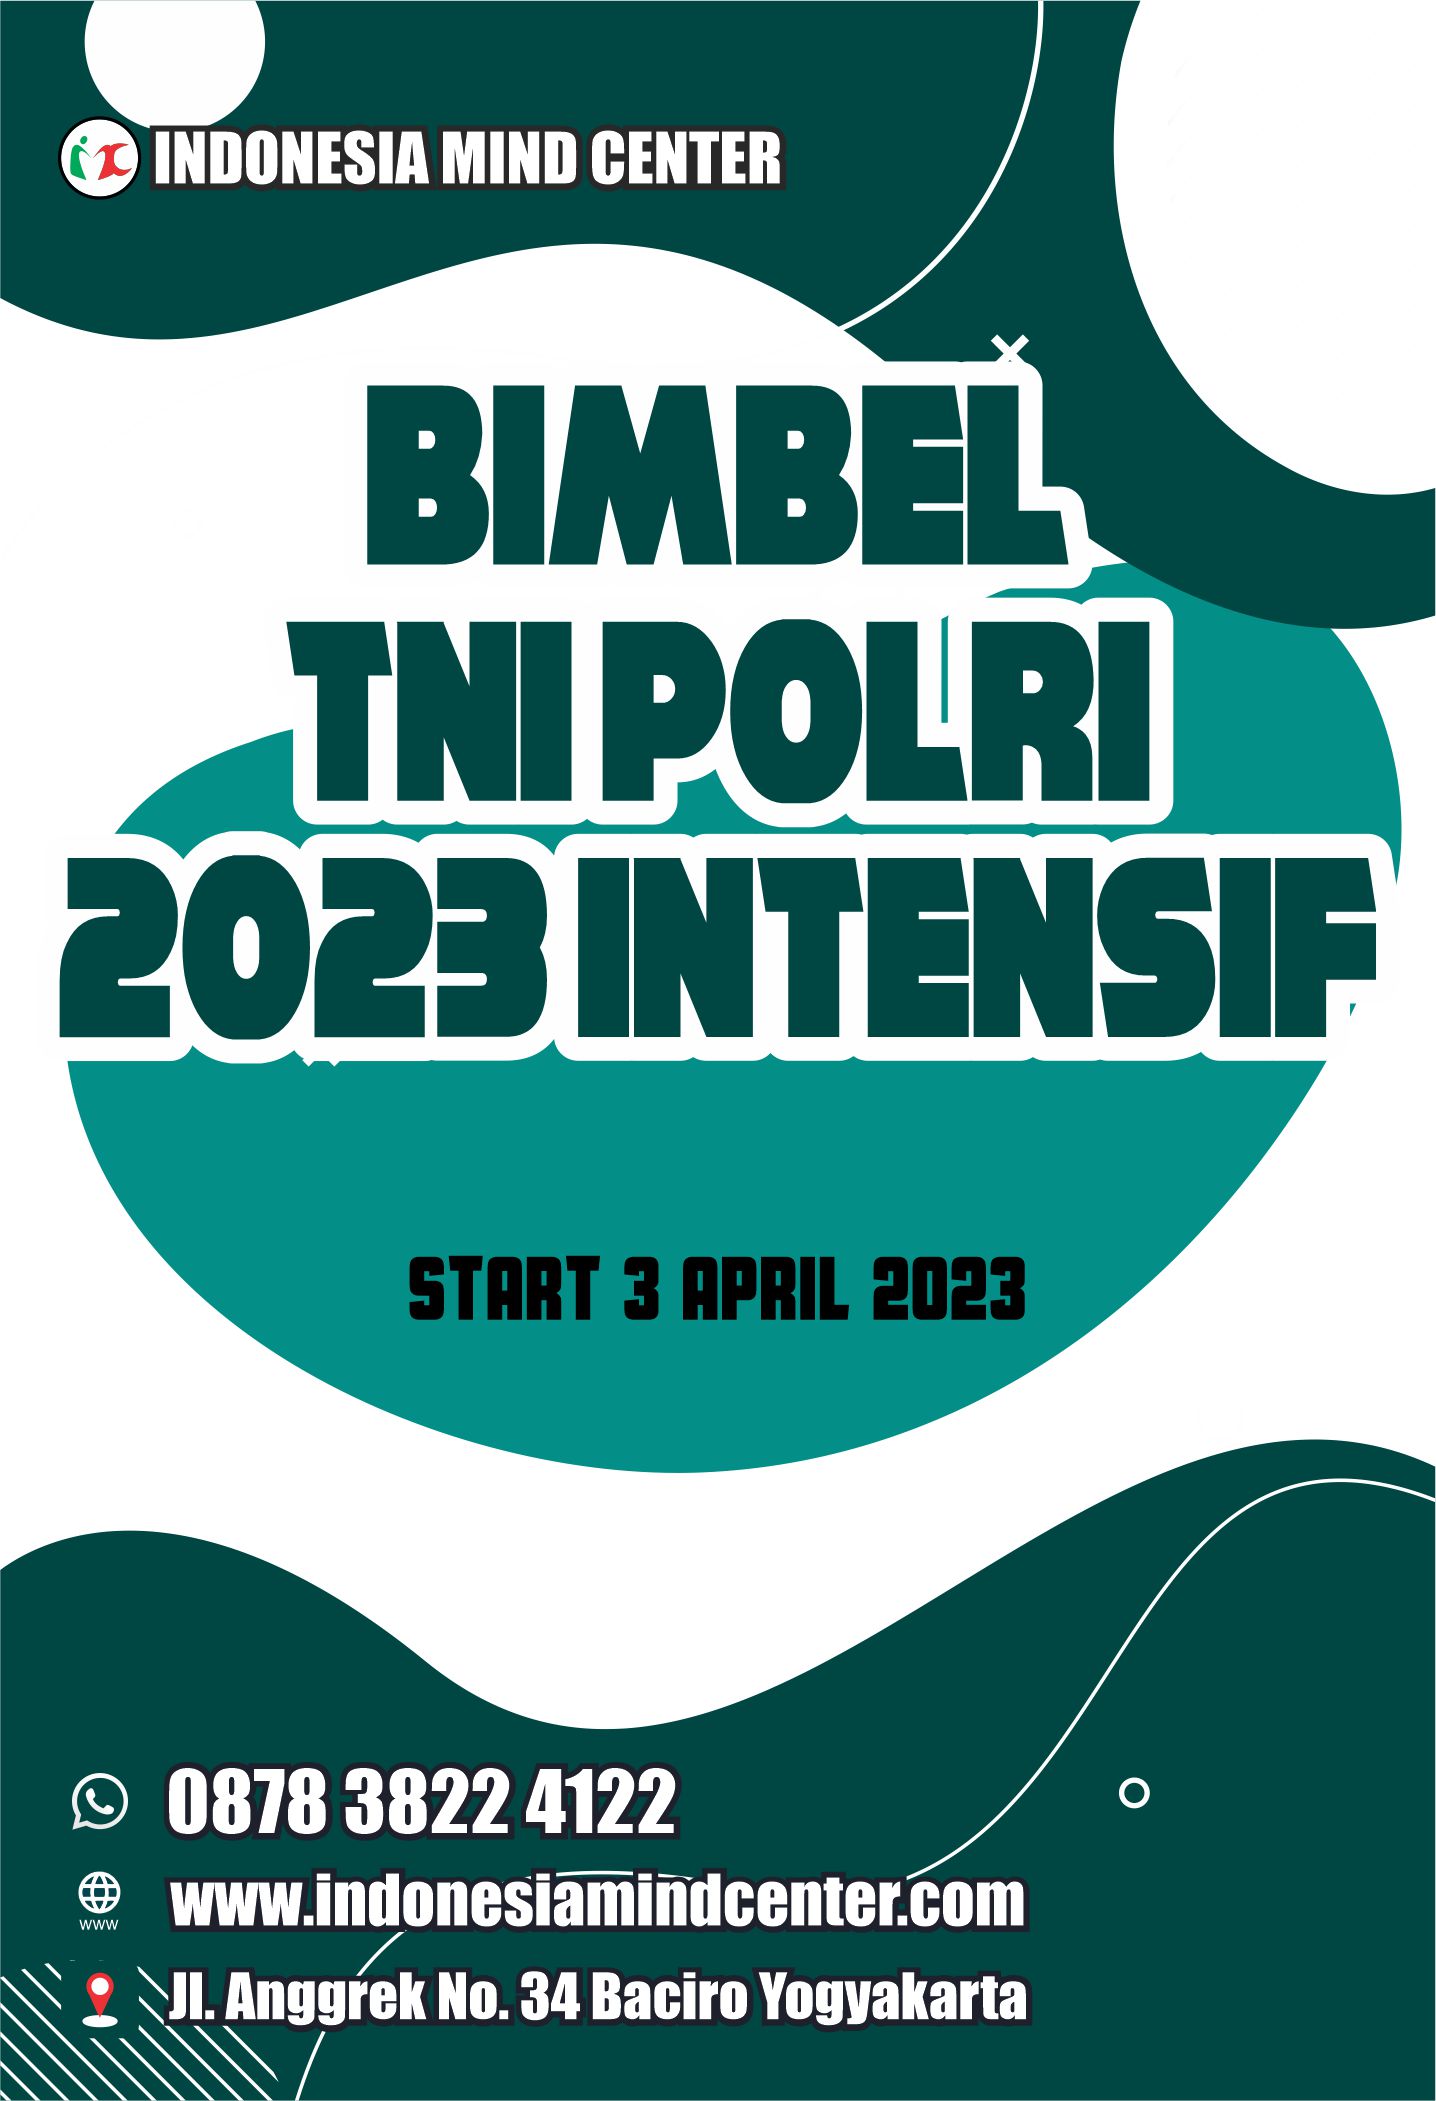 BIMBEL TNI POLRI 2023 INTENSIF START 3 APRIL 2023